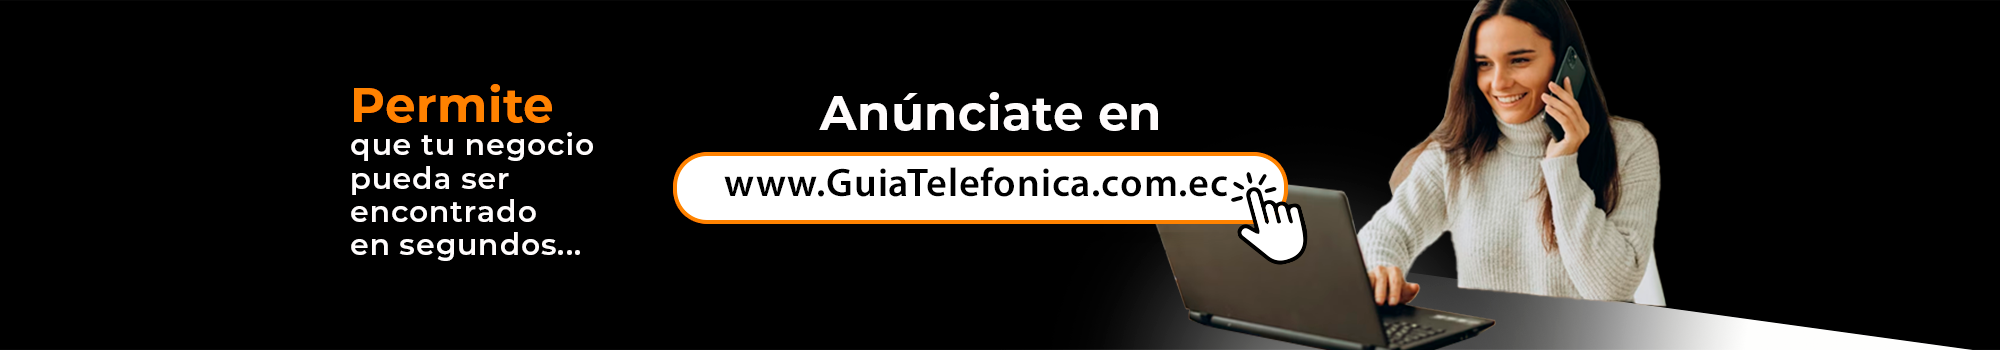 Guiatelefonica.com.ec